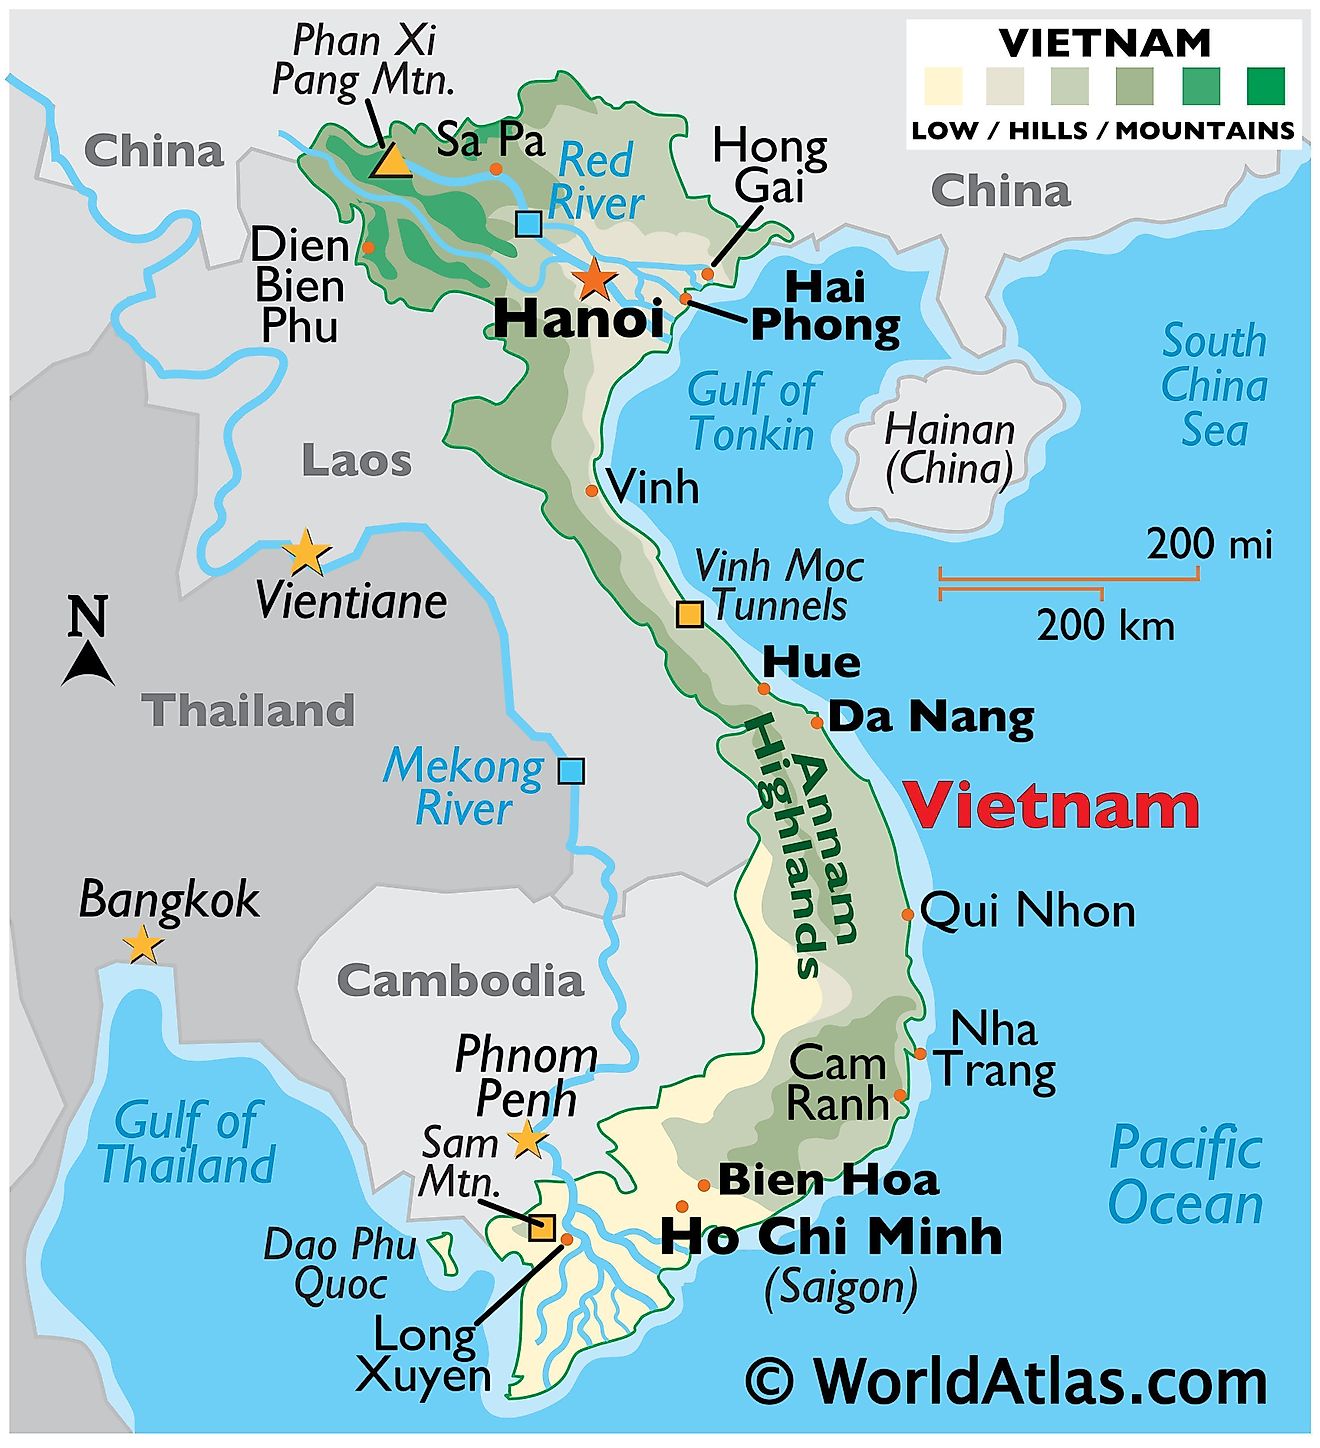 Álbumes 92+ Foto Mapa De La Region De Vietnam El último